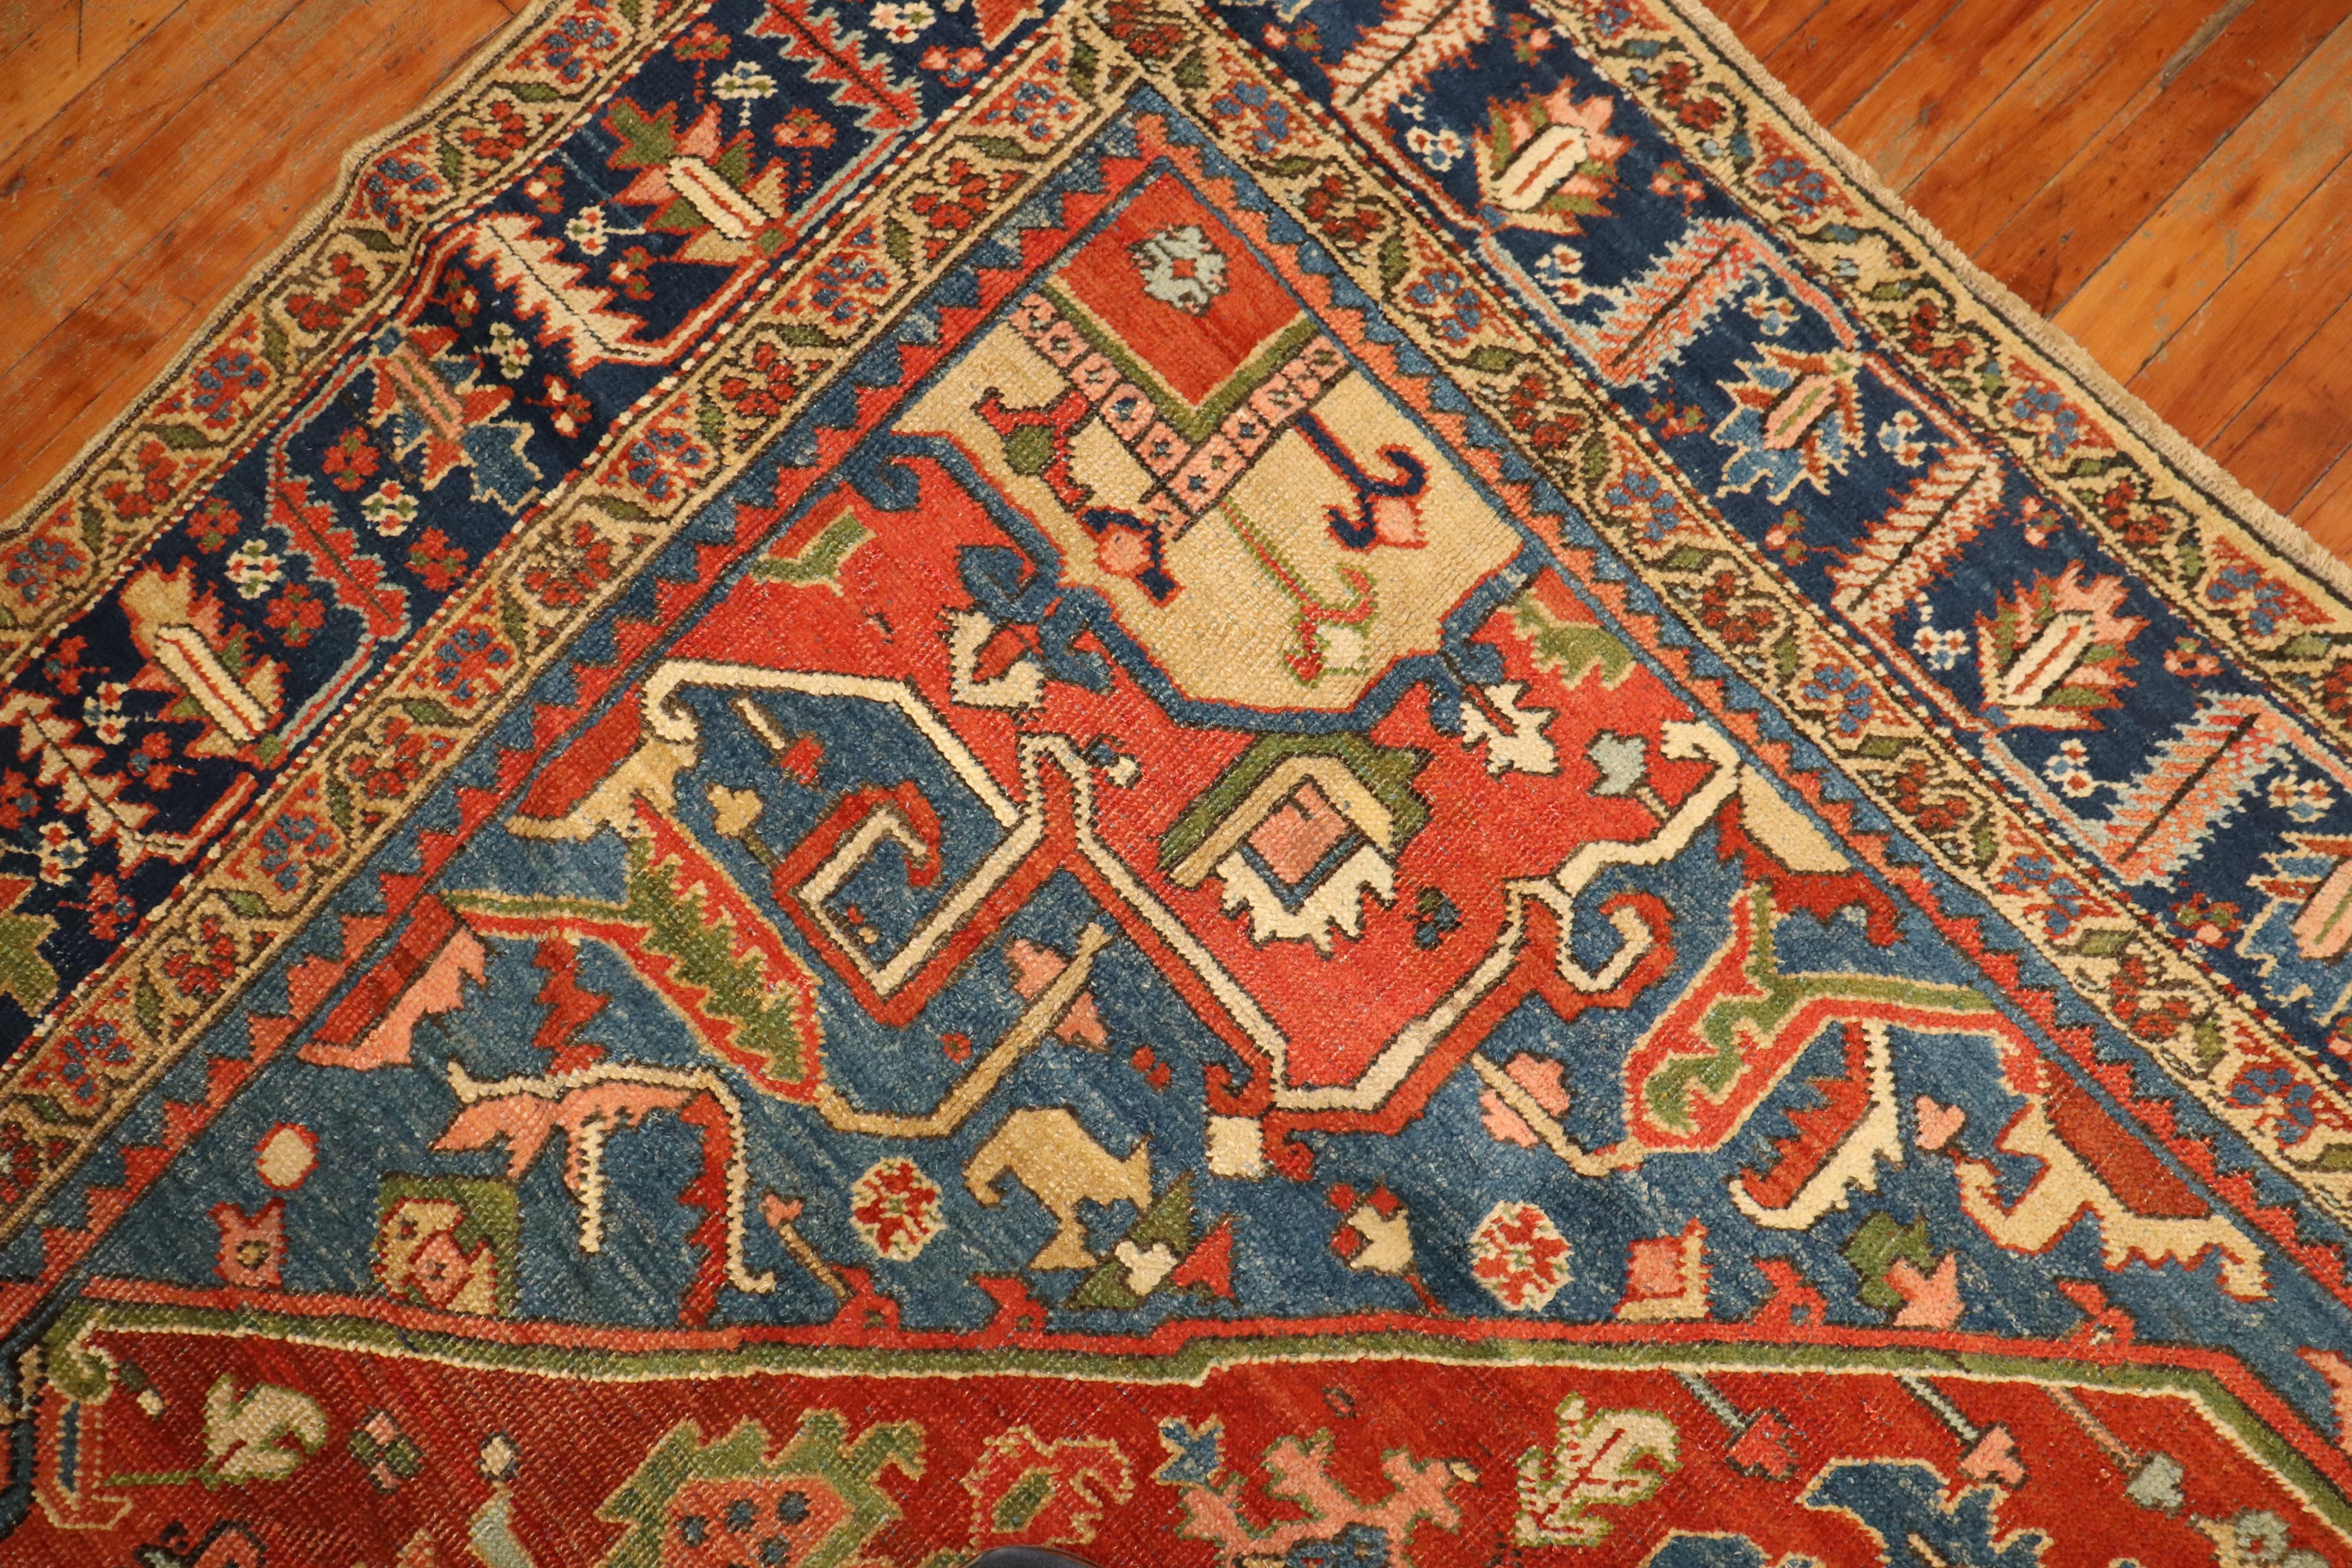 20th Century Rare Antique Persian Heriz Square Room Size Rug